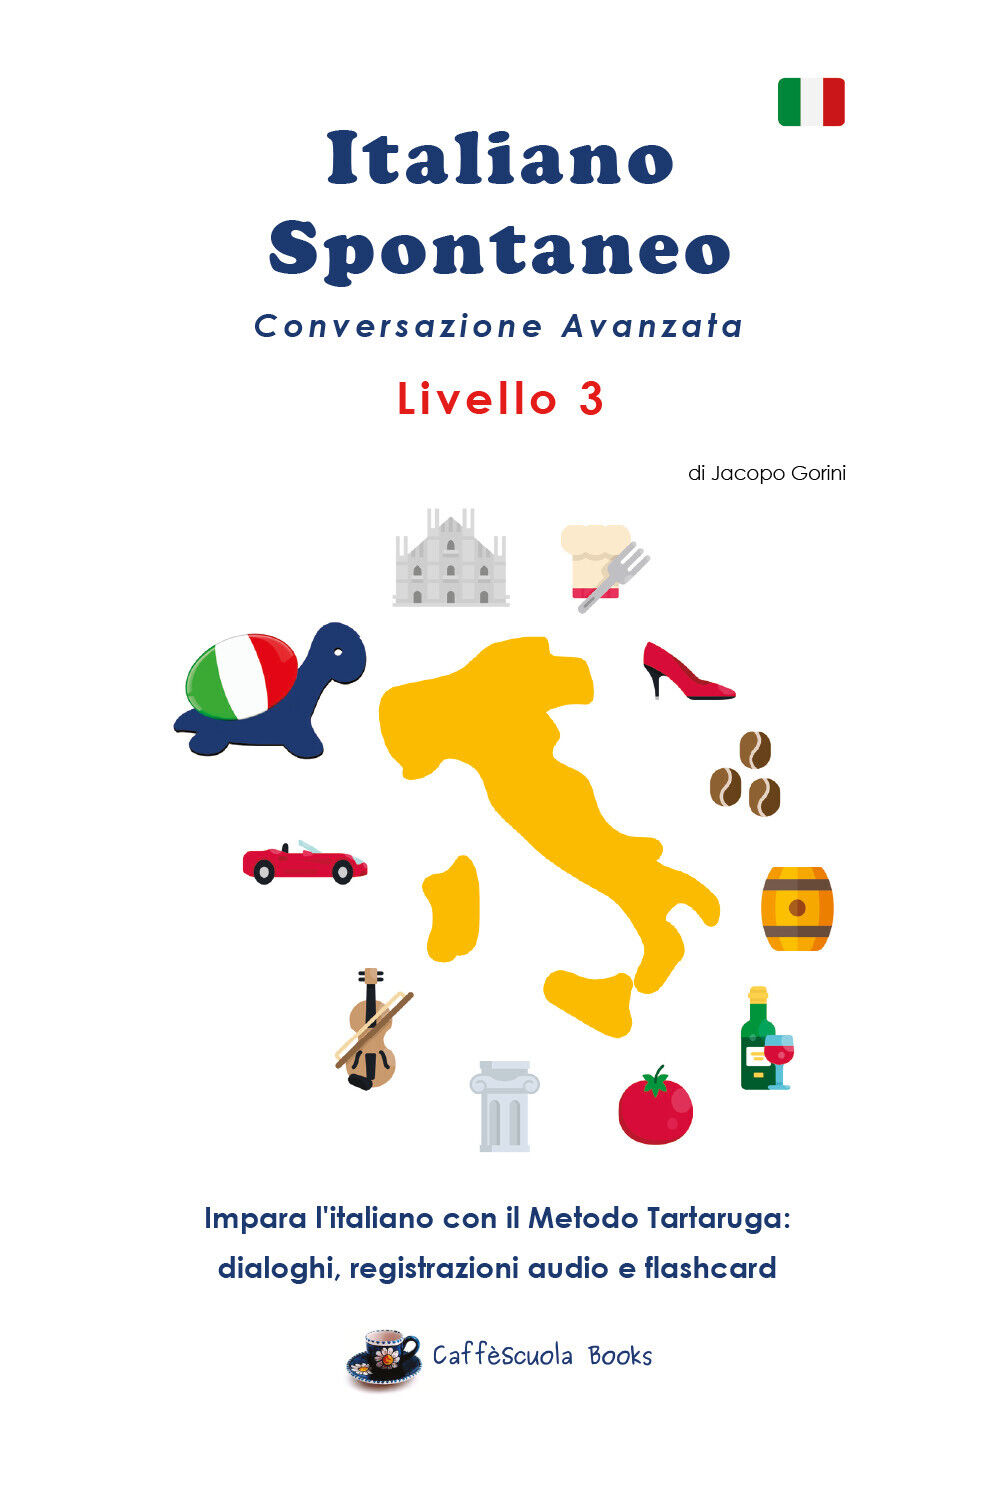 Italiano Spontaneo - Livello 3 di Jacopo Gorini, 2020, Youcanprint